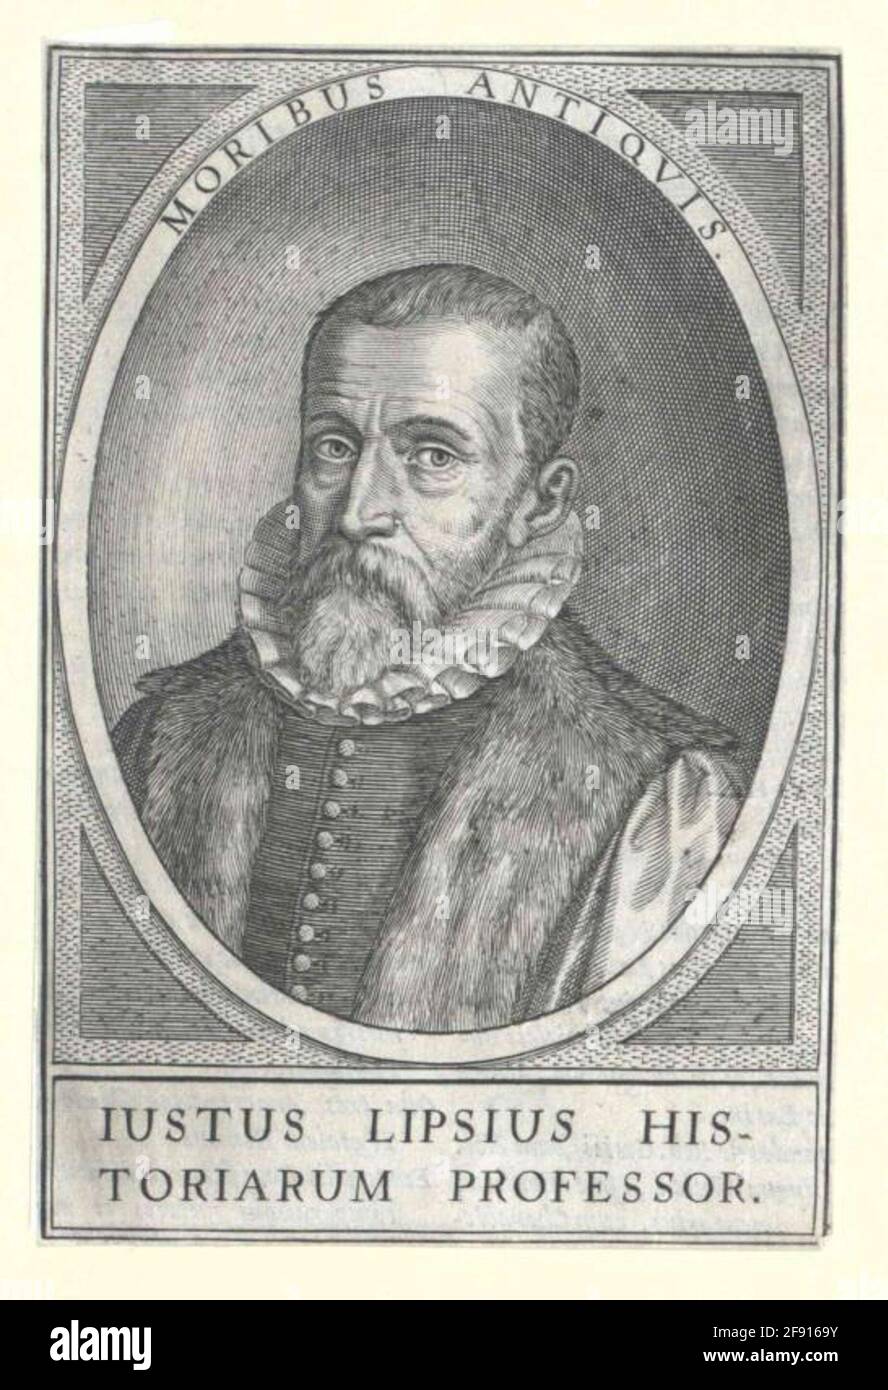 Lipsius, Justus. Stock Photo